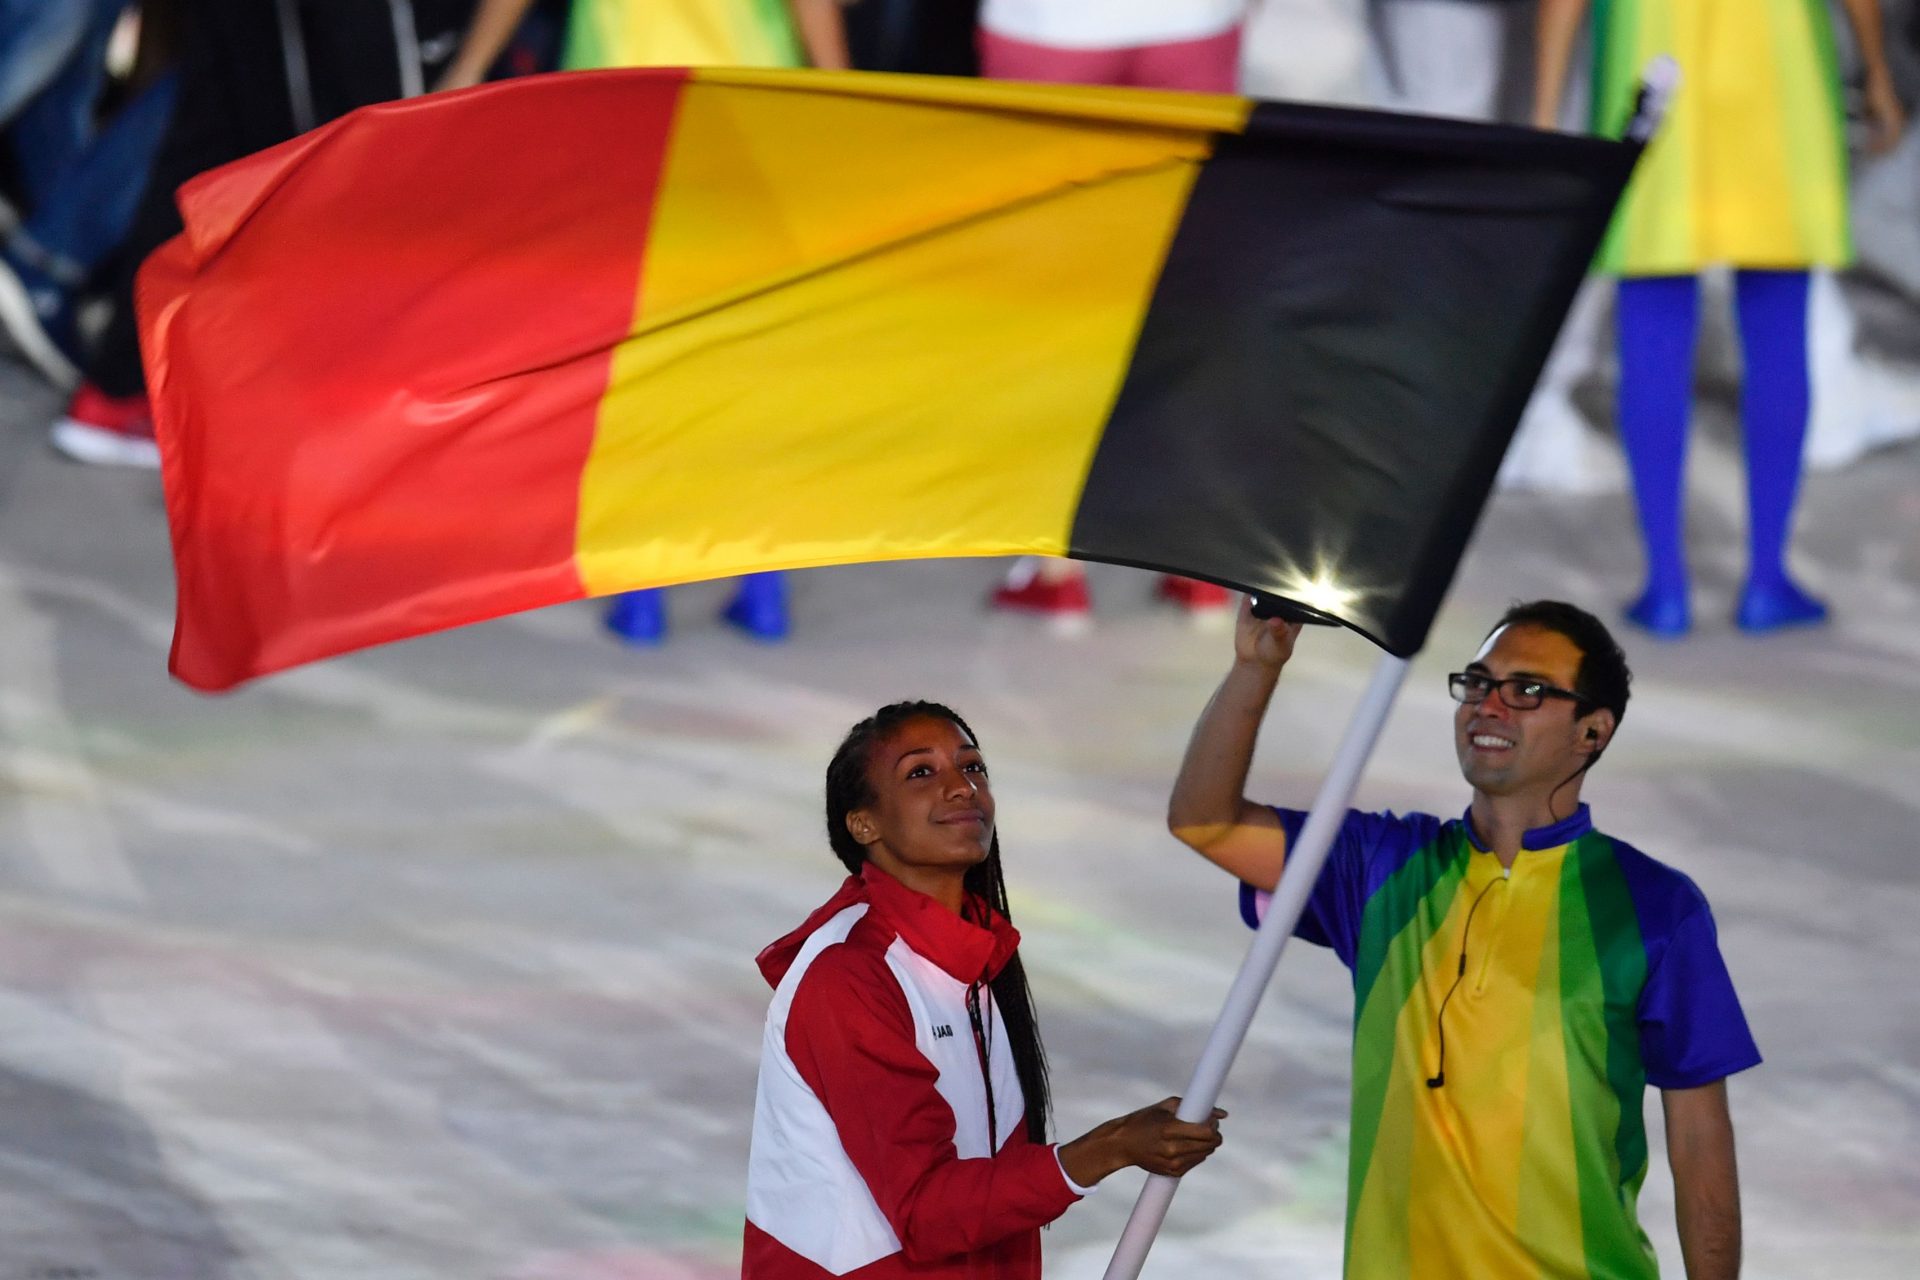 Belgium's flag bearer